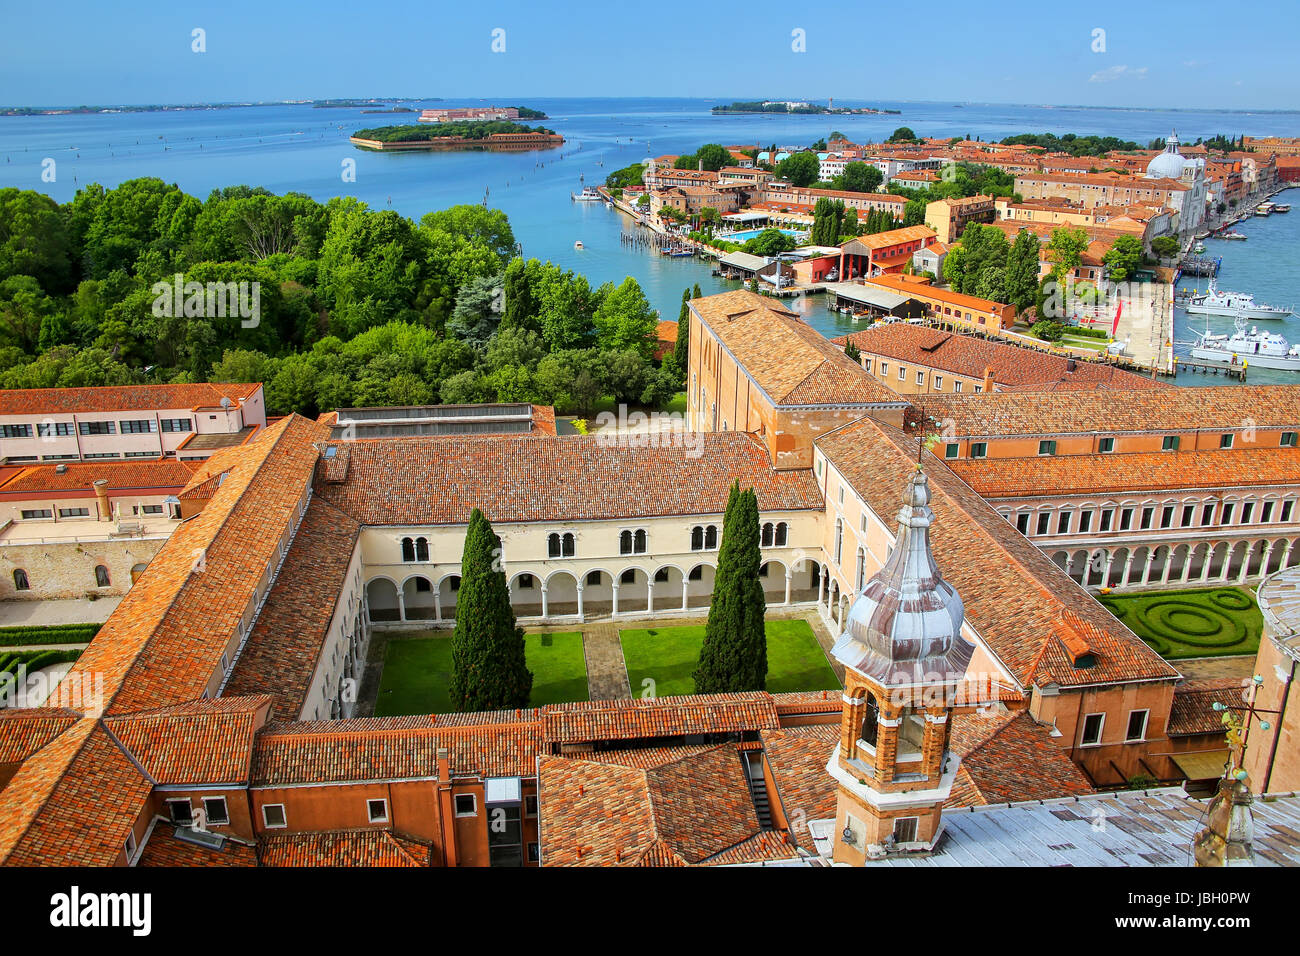 Vue sur le Monastère de San Giorgio et l''île de Giudecca à Venise, Italie. Monastère est situé sur l'île de San Giorgio Maggiore Banque D'Images